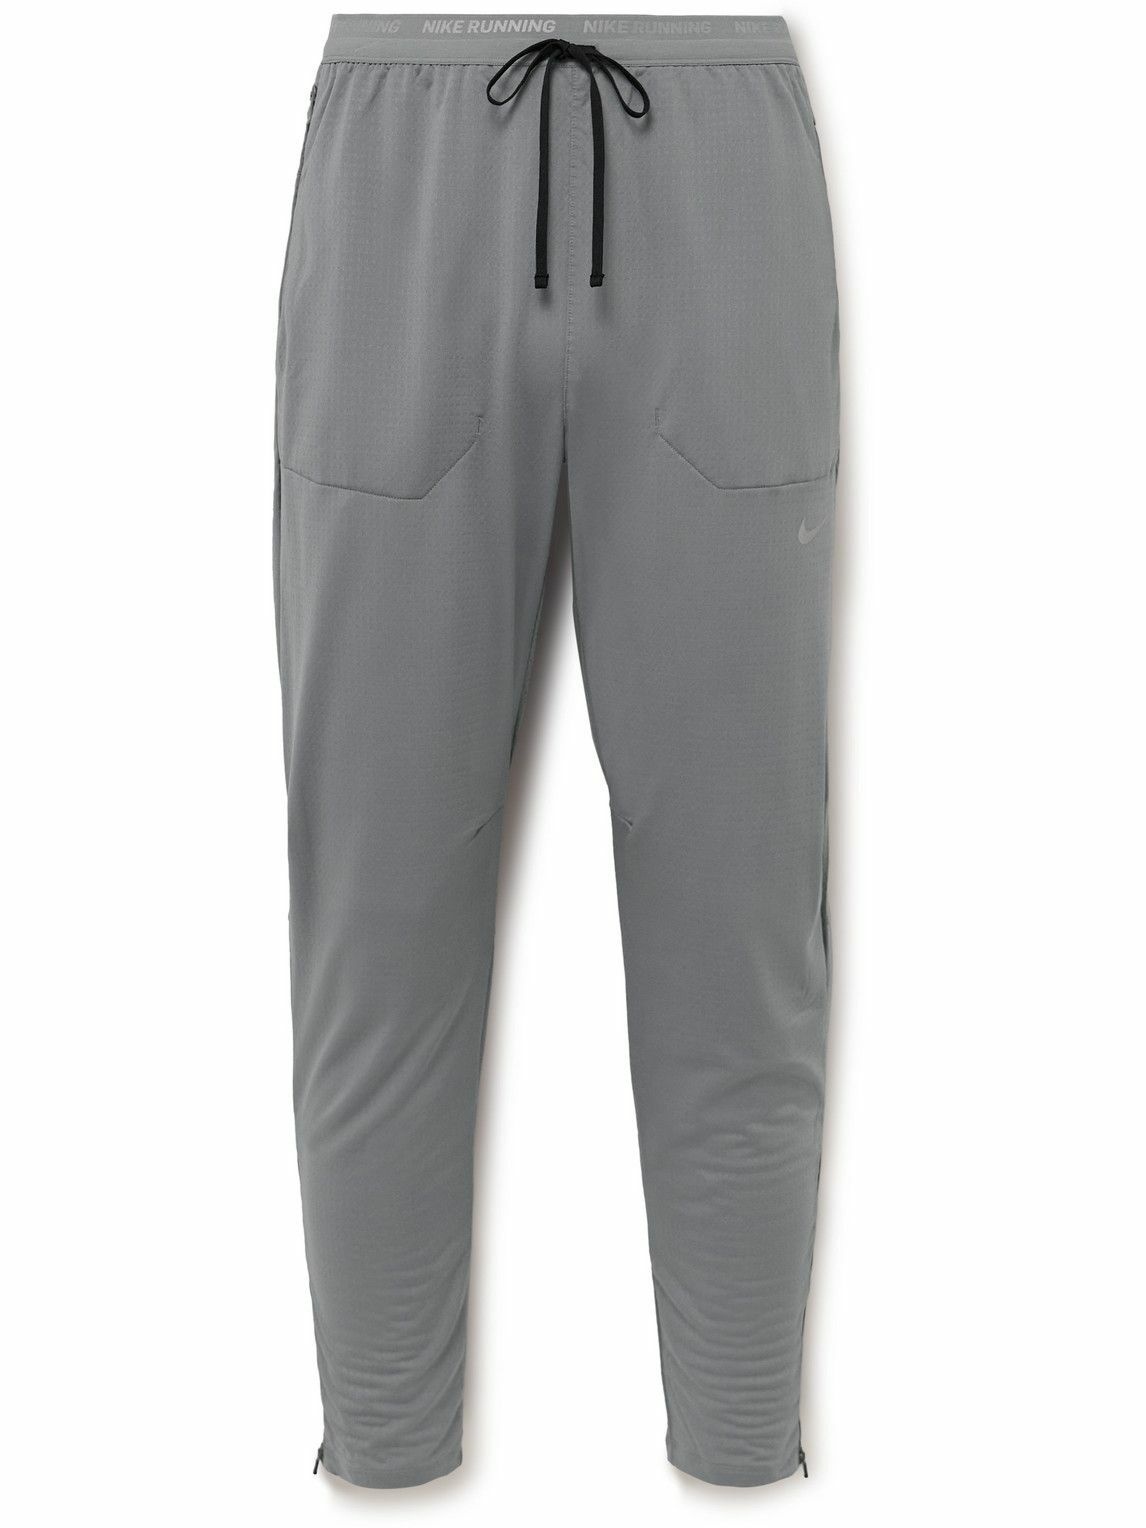 Photo: Nike Running - Phenom Elite Tapered Dri-FIT Track Pants - Gray